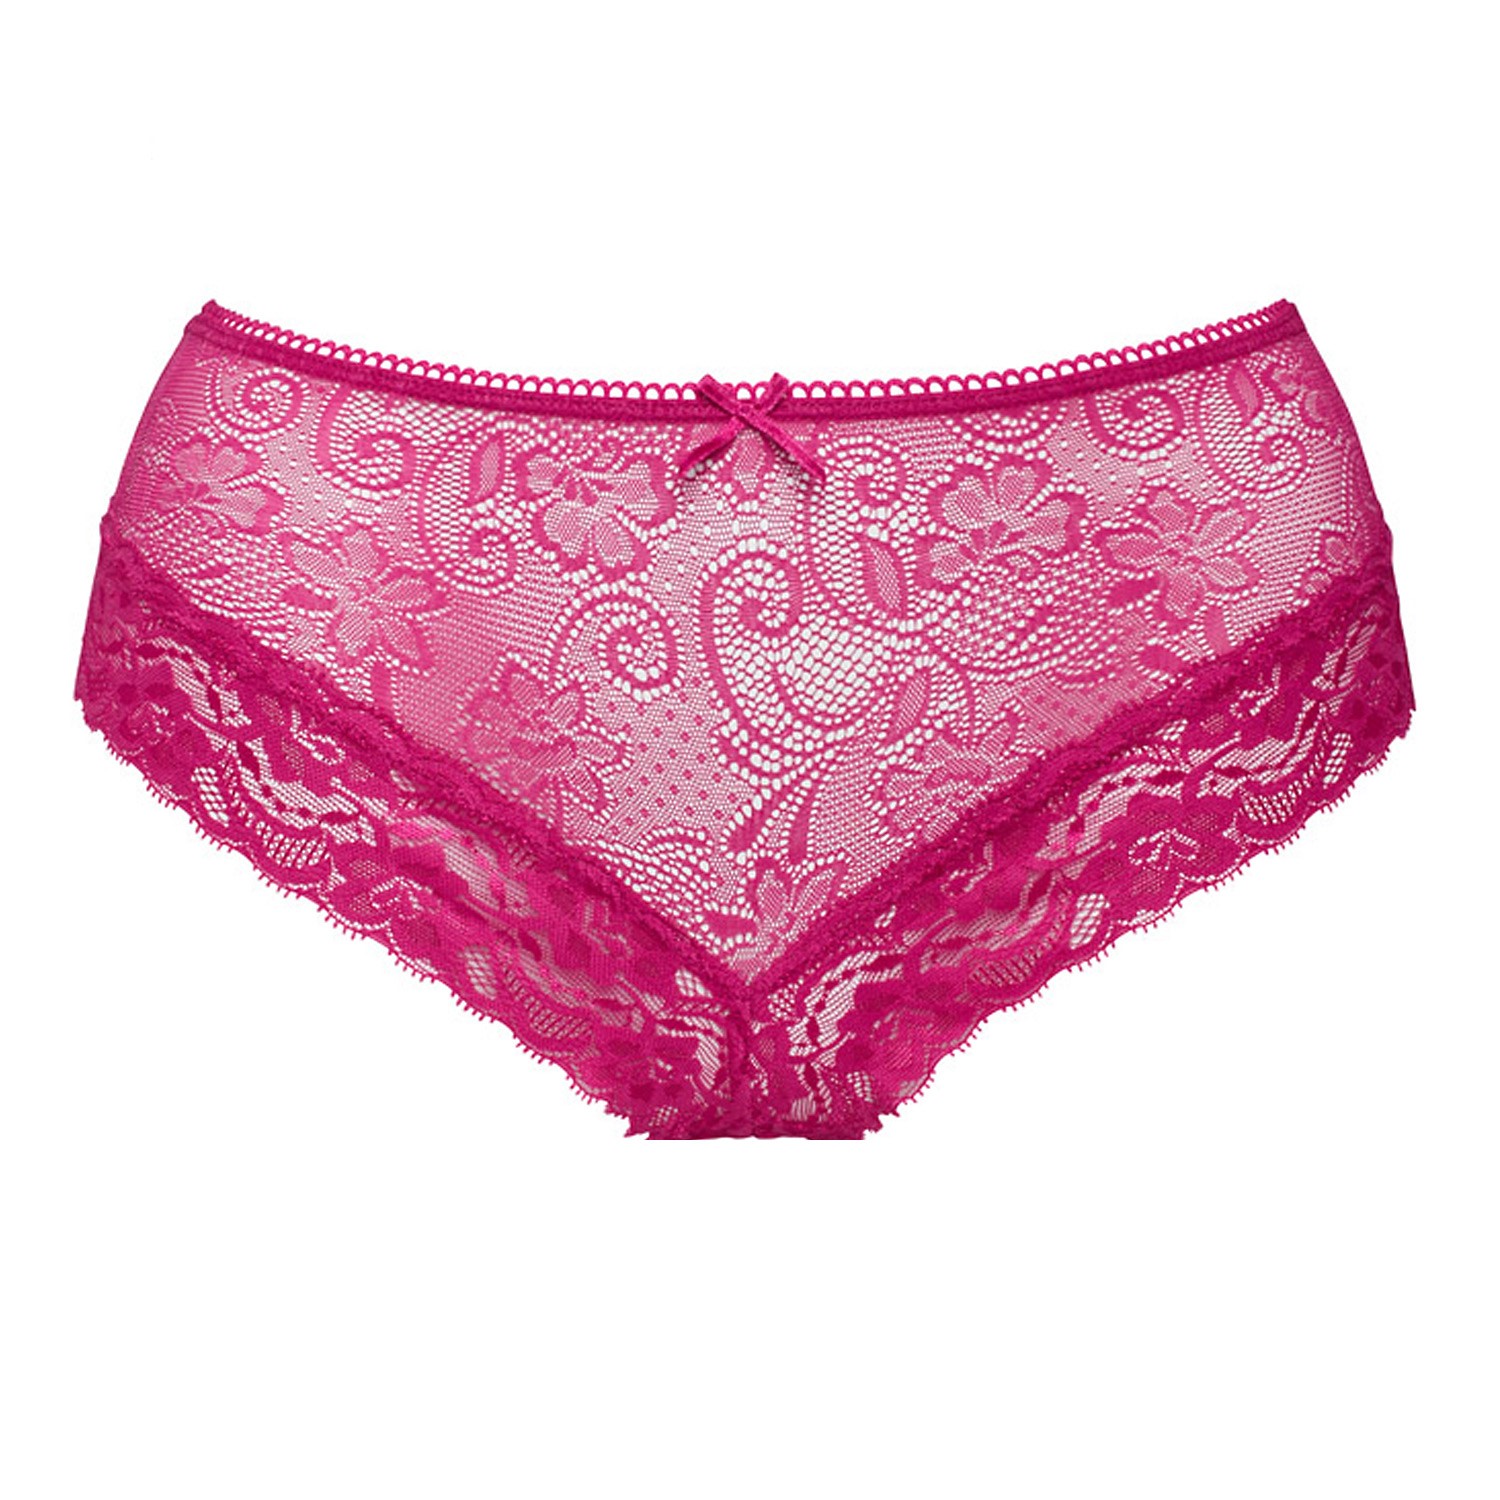 Abecita Little Wonder Lace Hipster Pink - Hipster - Panties - Underwear ...